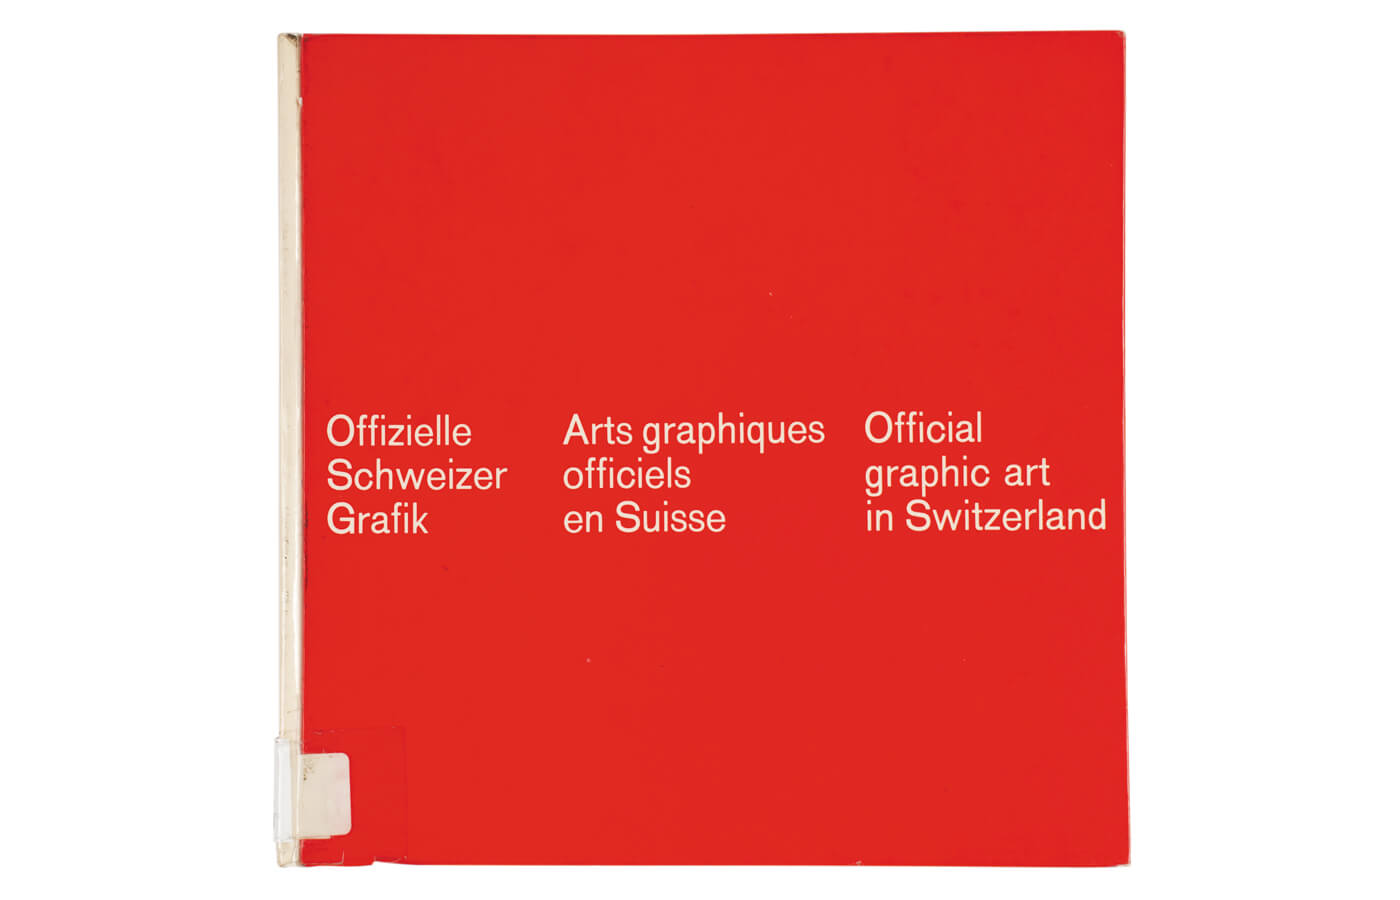 Offizielle Scheizer Grafik | Arts graphiques officiels en Suisse | Official graphic art in Switzerland